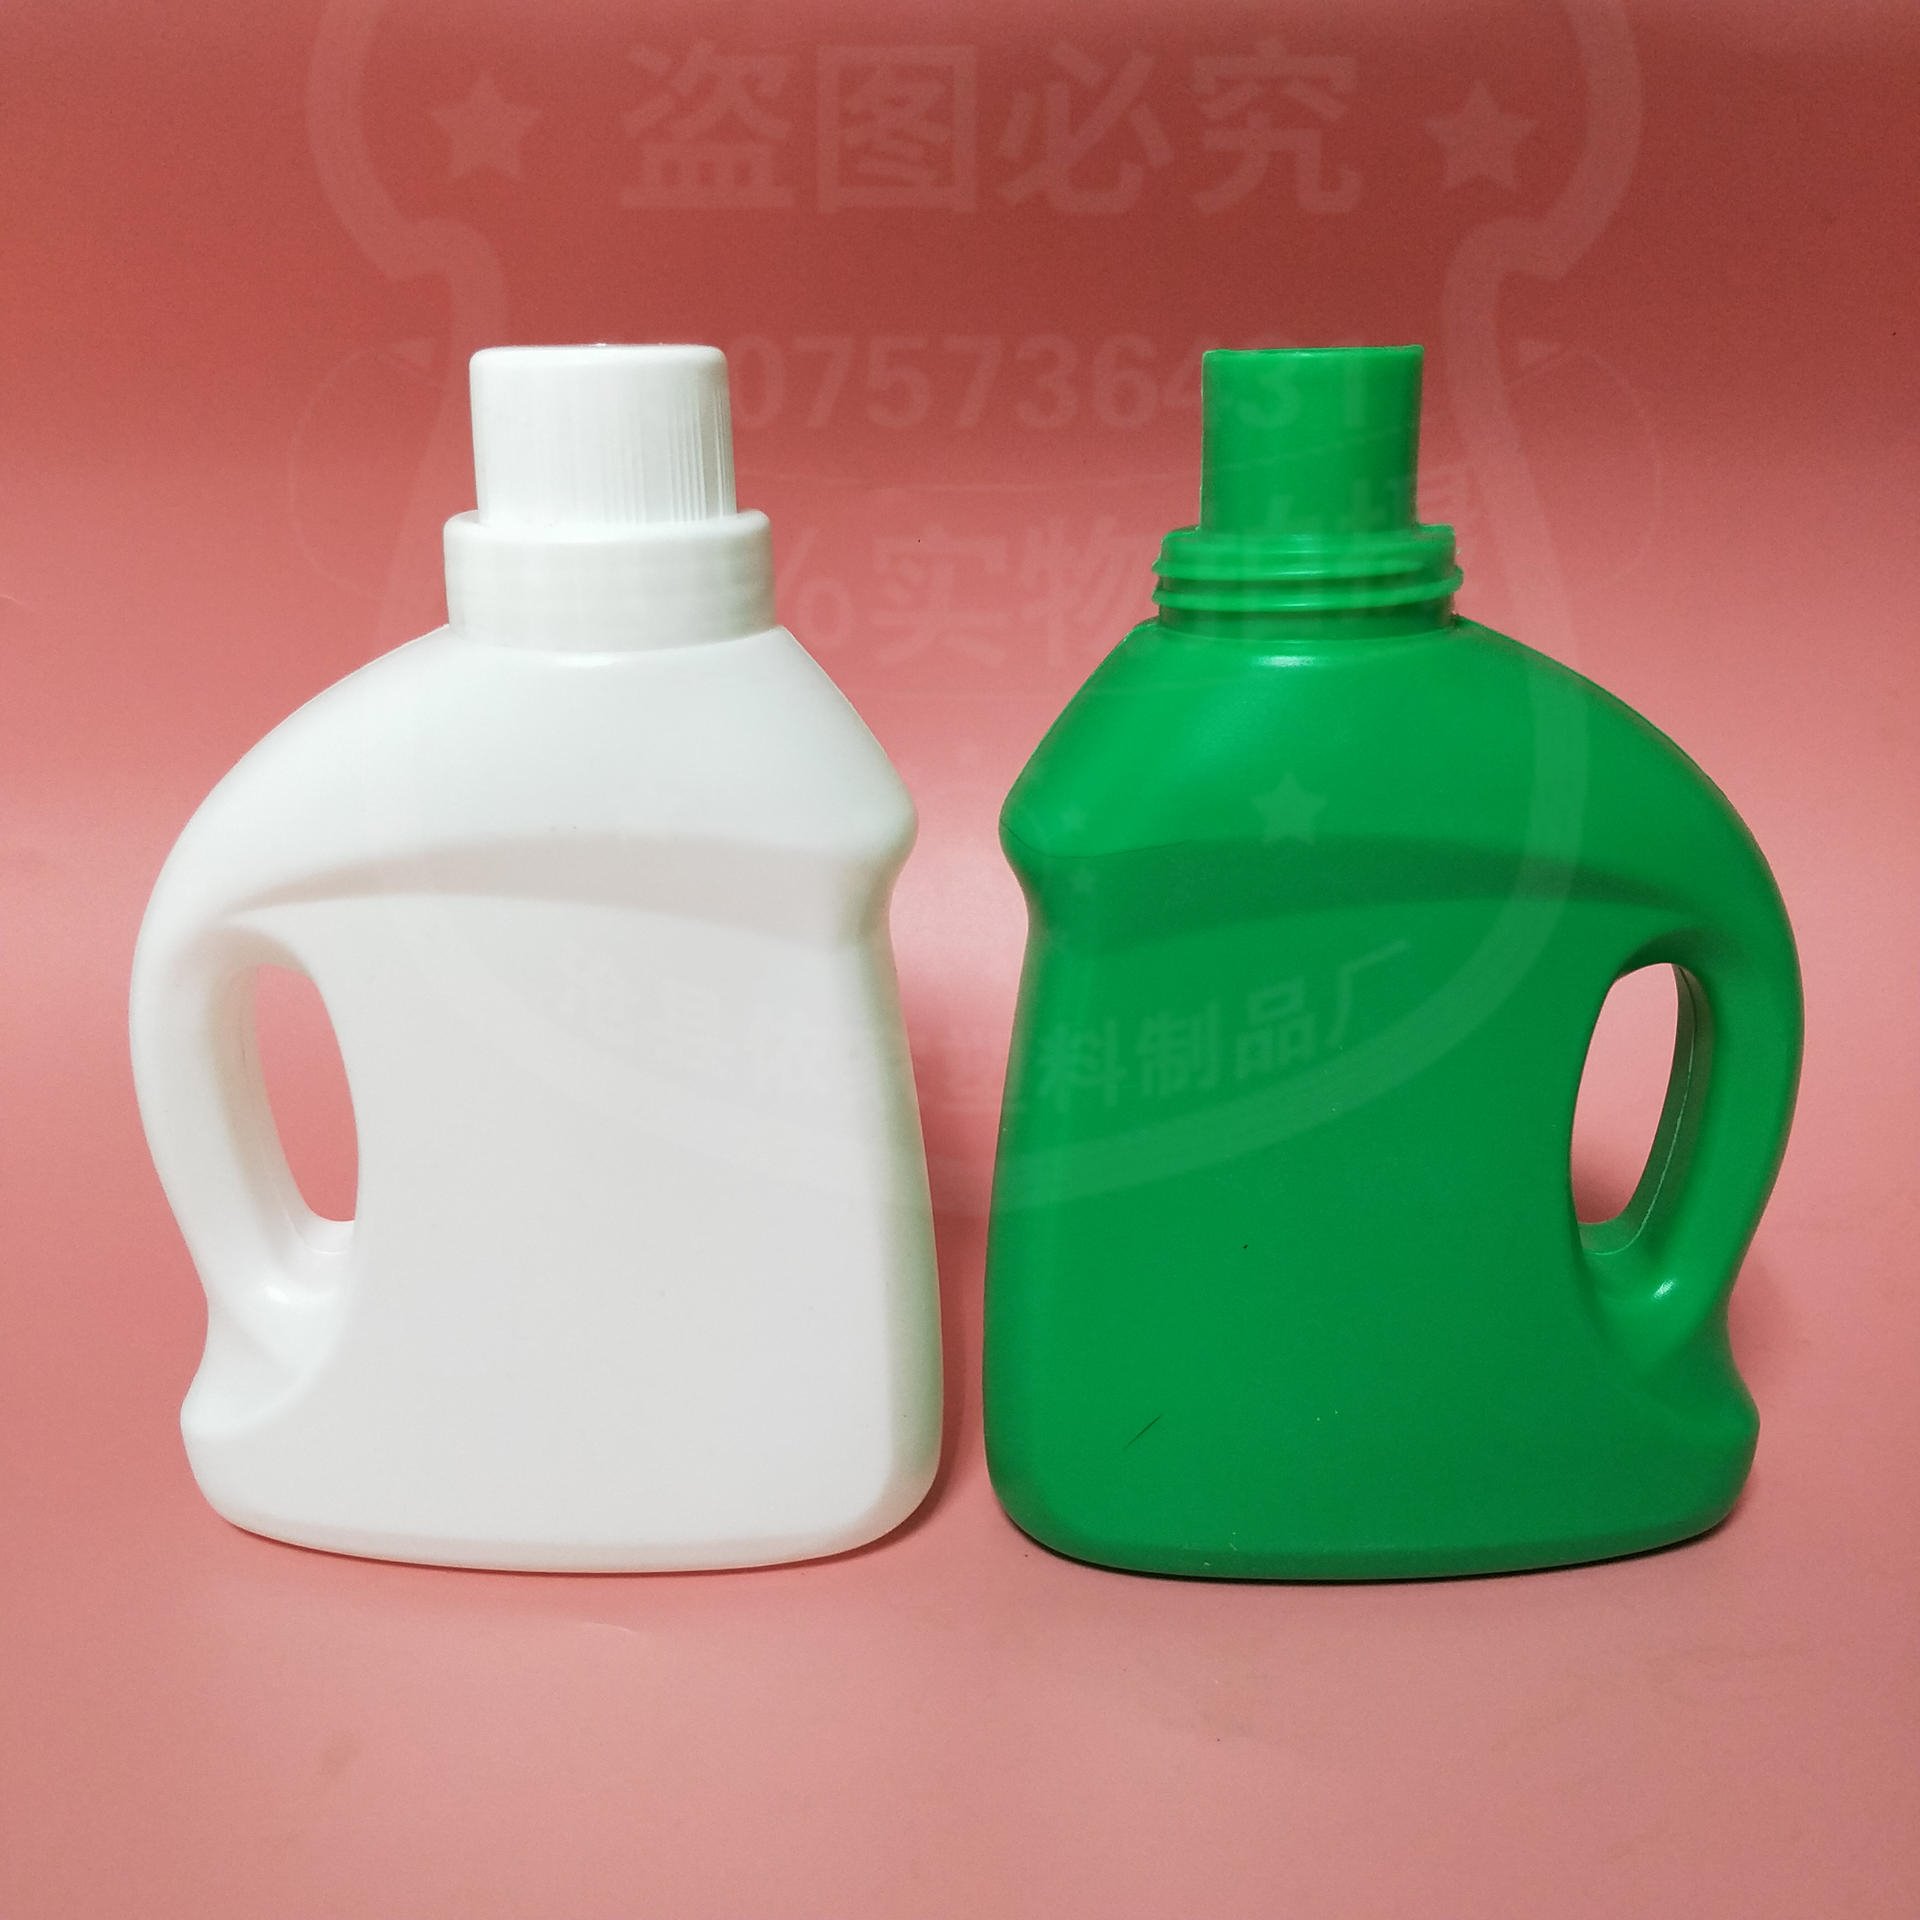 依家塑料 桶装洗衣液 批发各种塑料瓶  pe塑料包装瓶图片